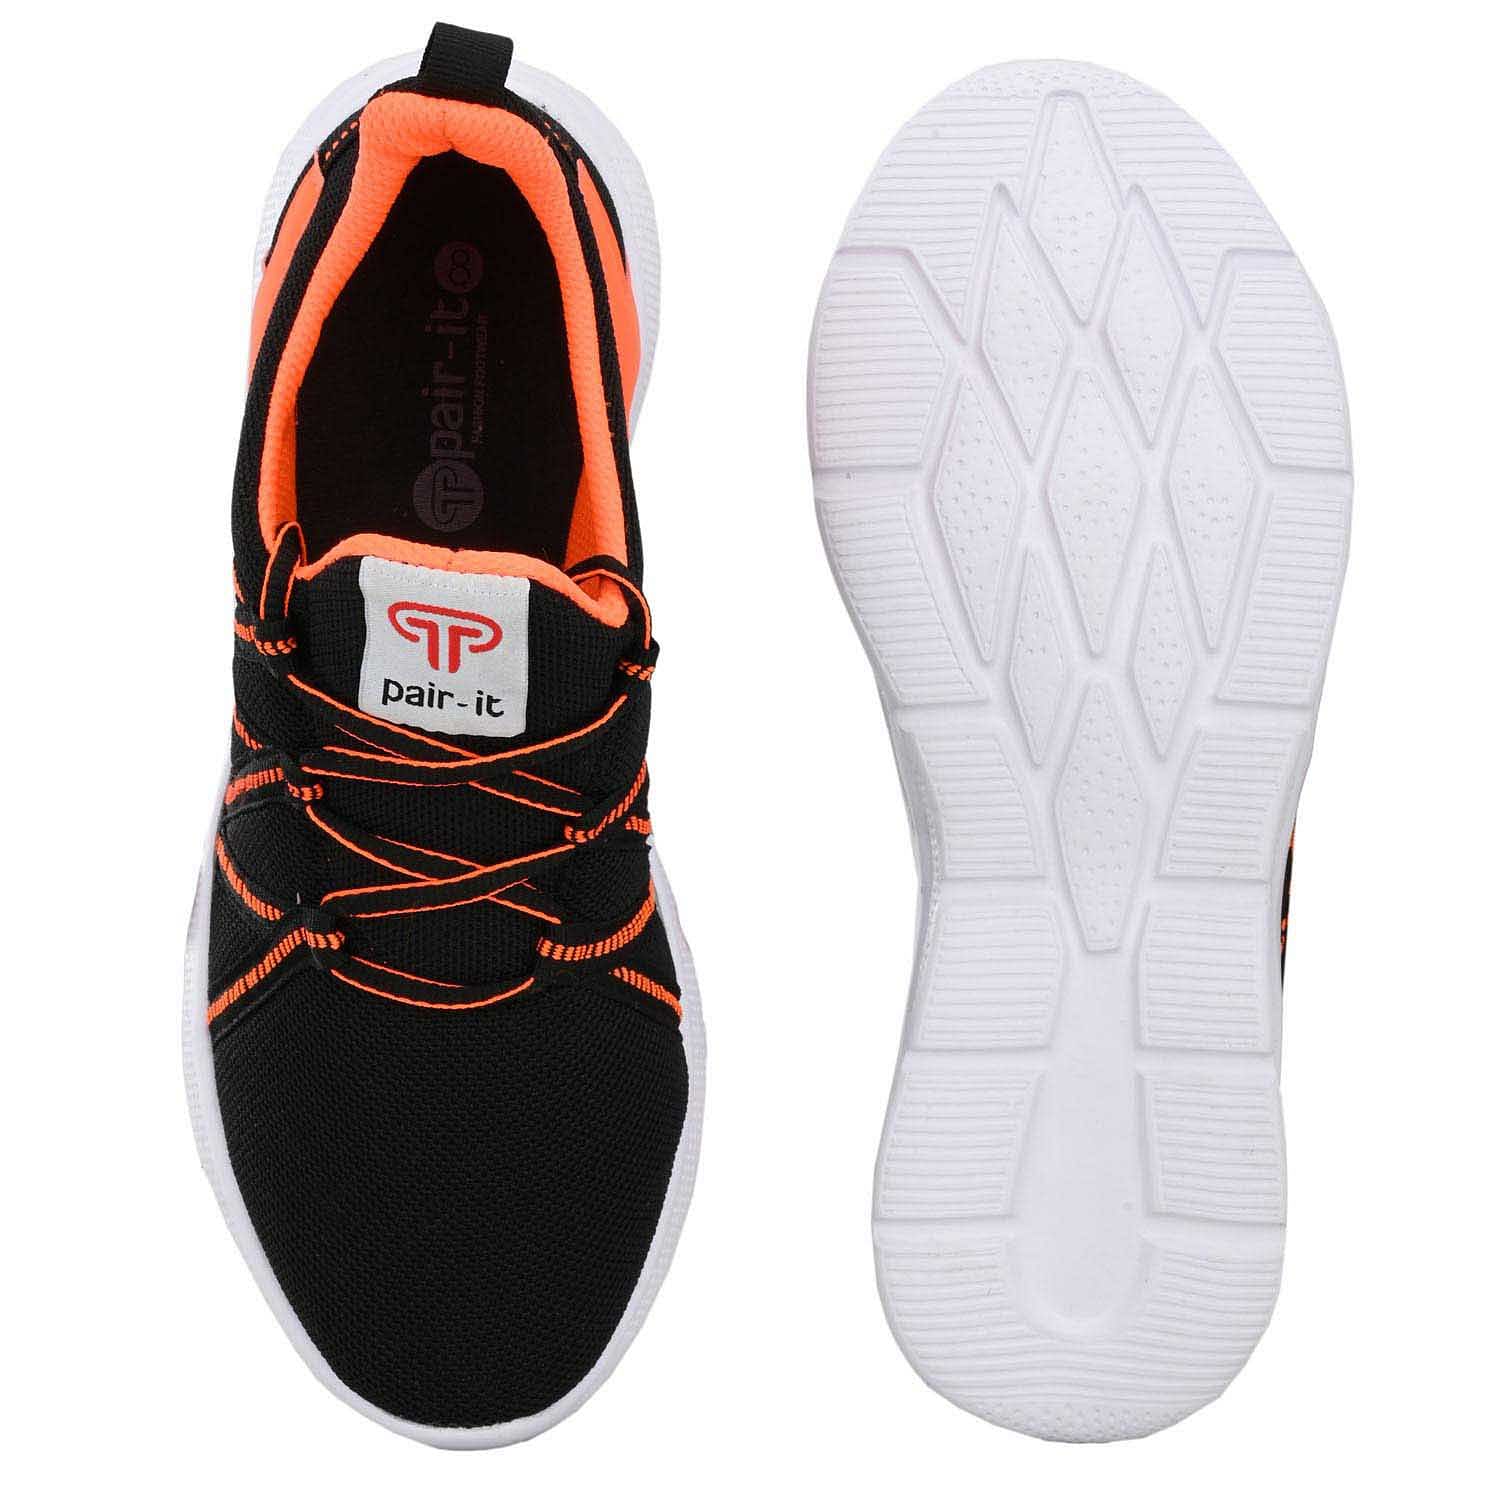 Pair-it Men's Sports Shoes-LZ-Presto-112-Black